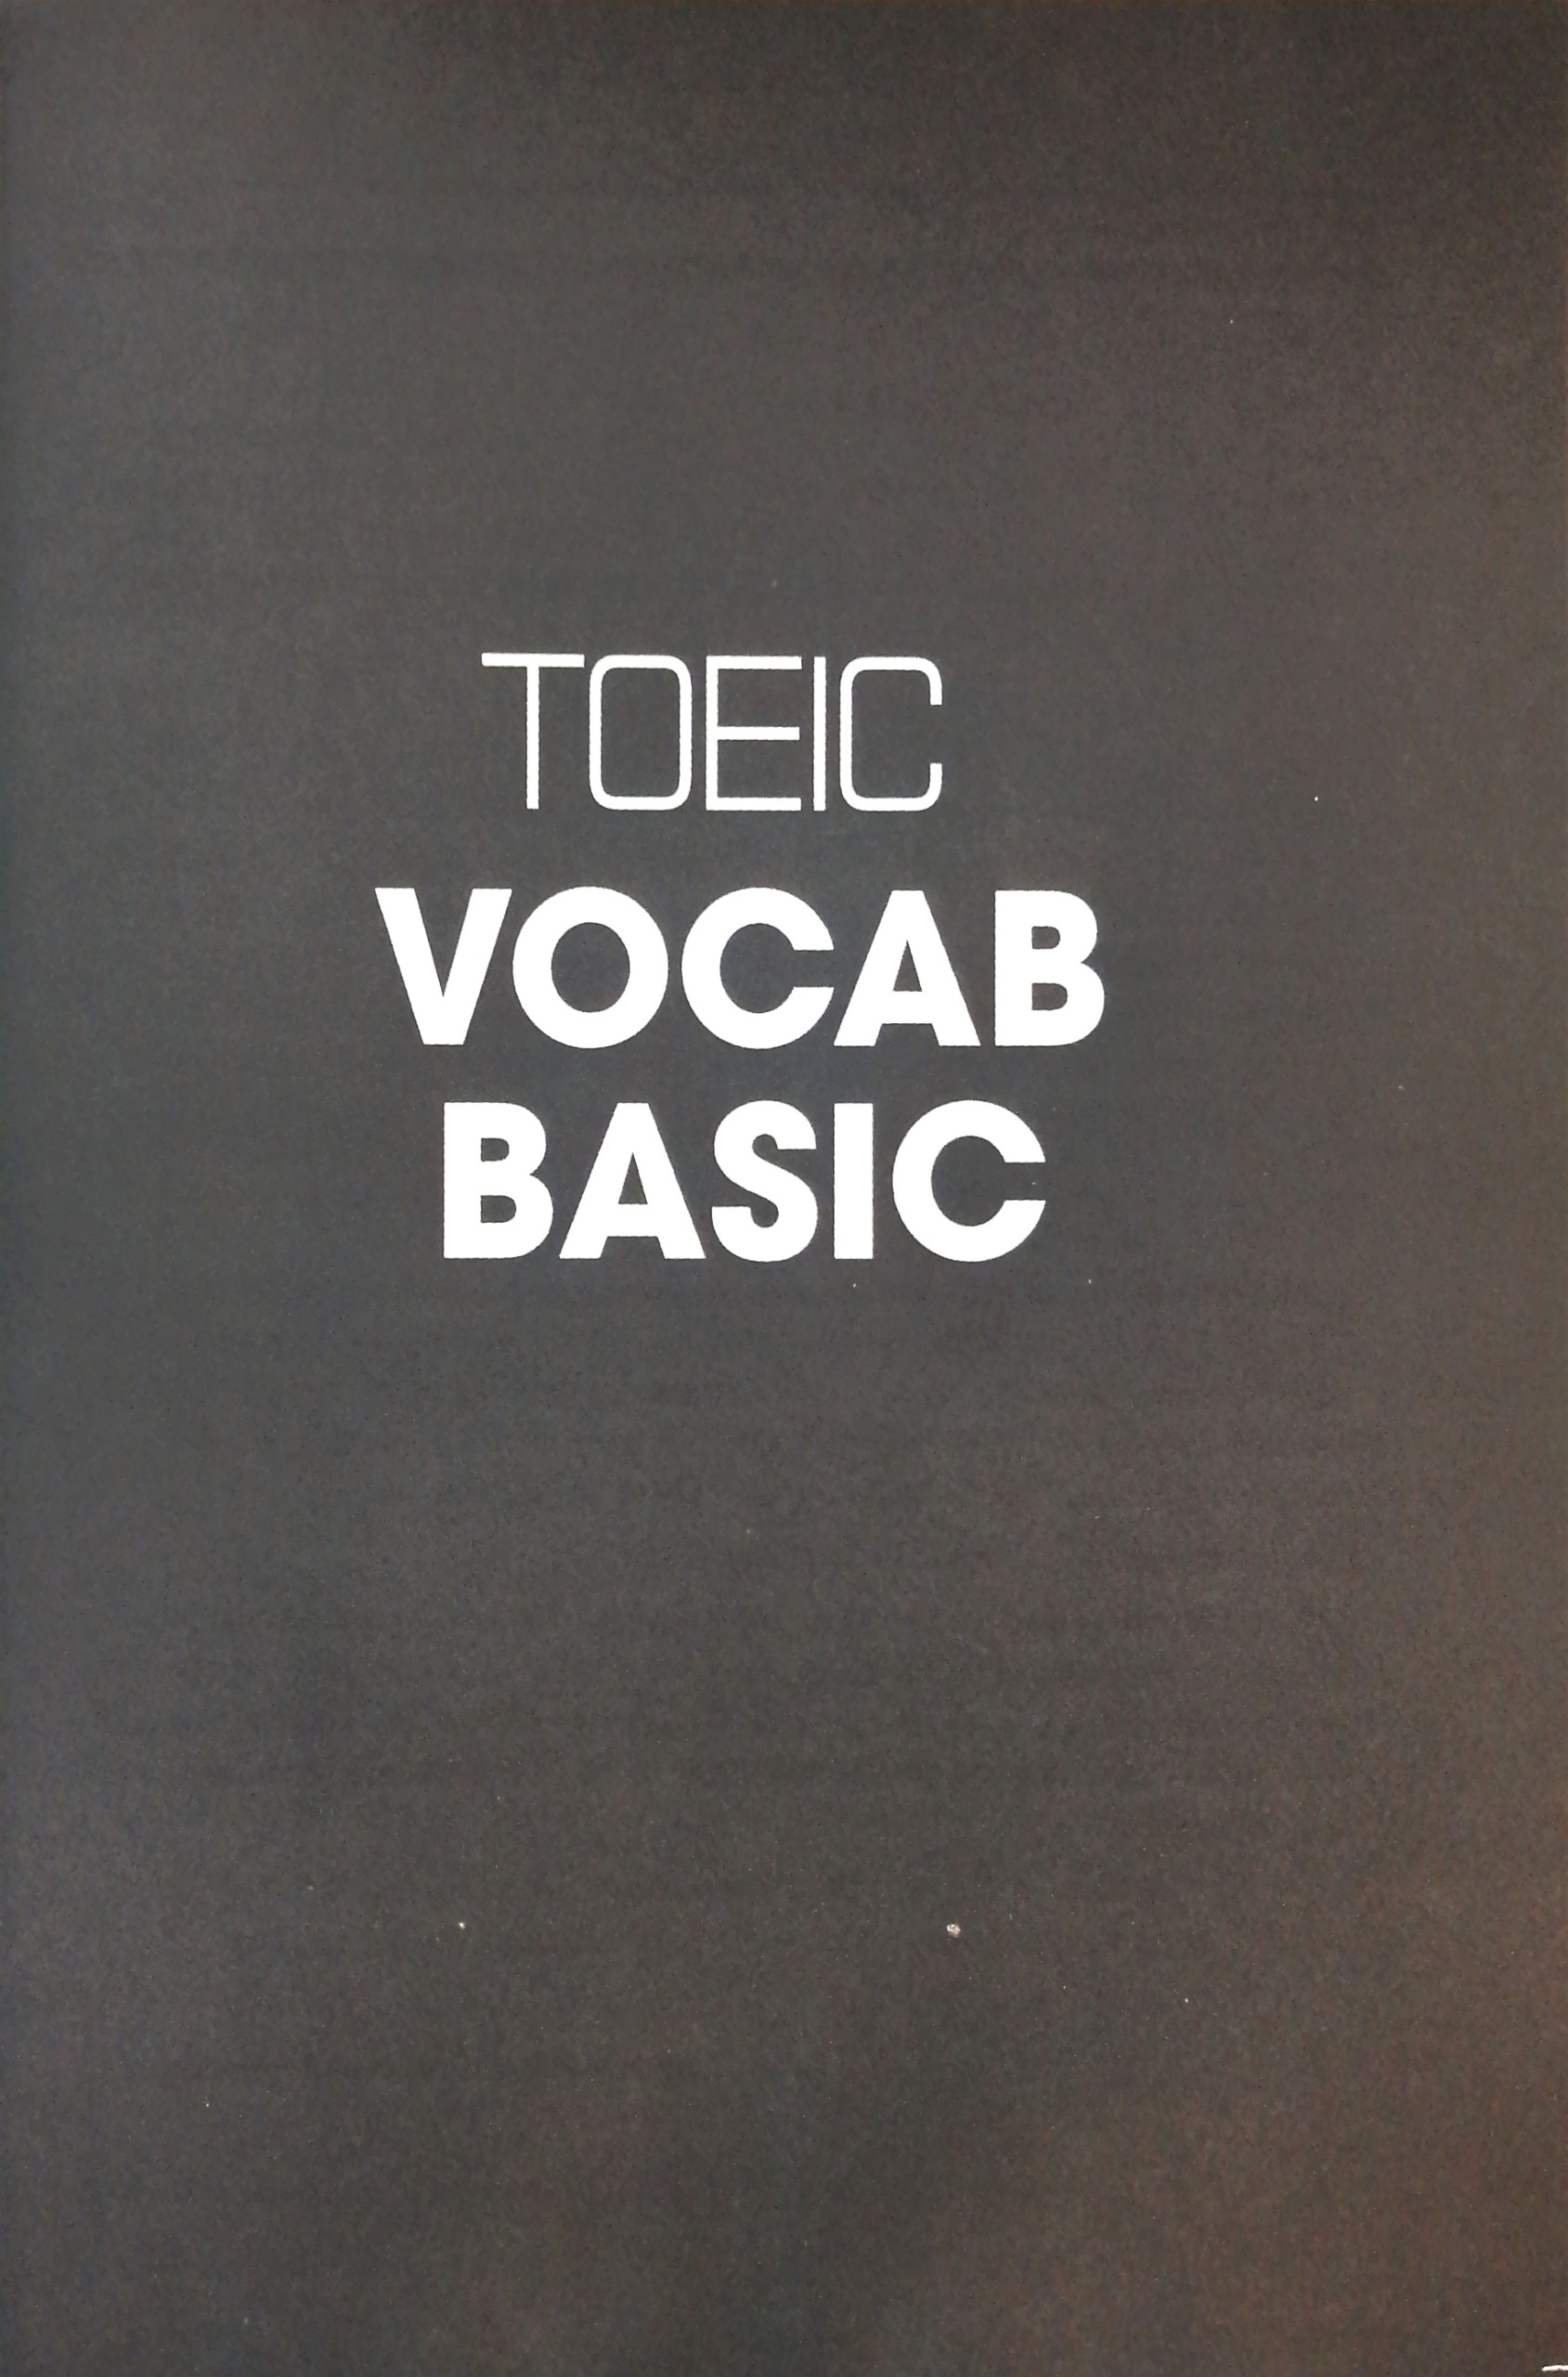 Toeic Vocab Basic - 1000 Từ Vựng Cơ Bản Kèm Bài Tập Dành Cho Người Mới Bắt Đầu PDF